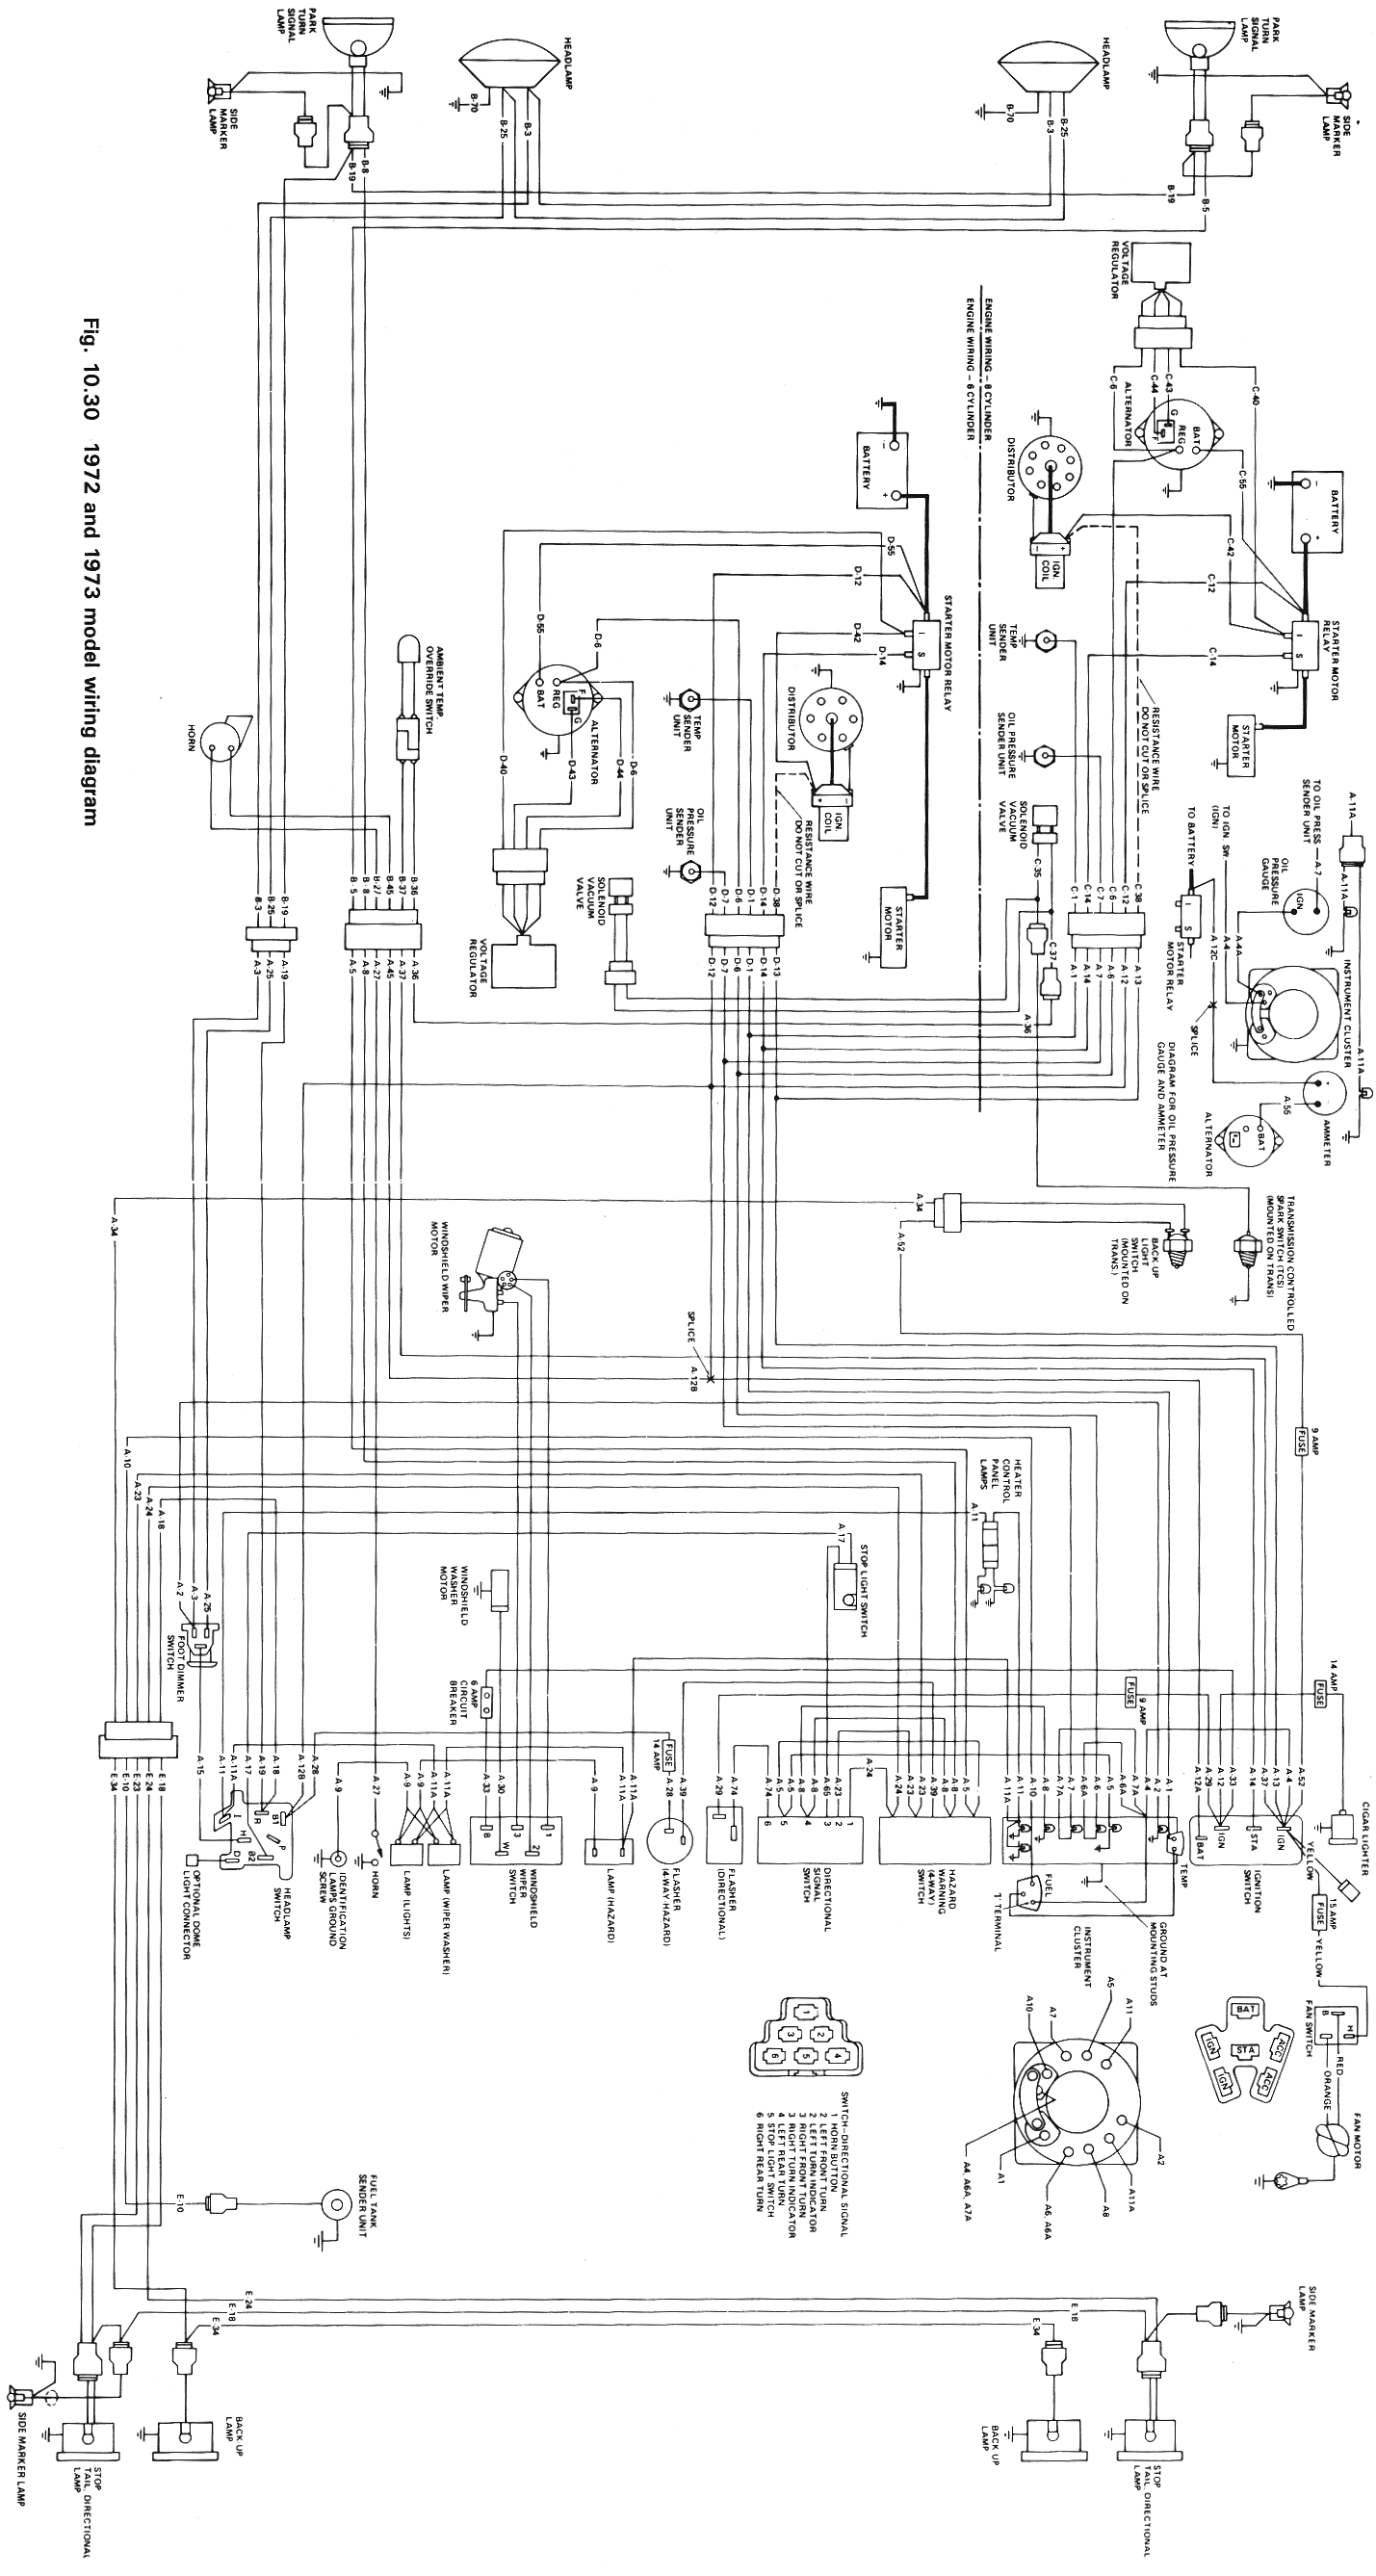 Wiring Schematics | eWillys CJ5 Jeep Wiring Diagram eWillys